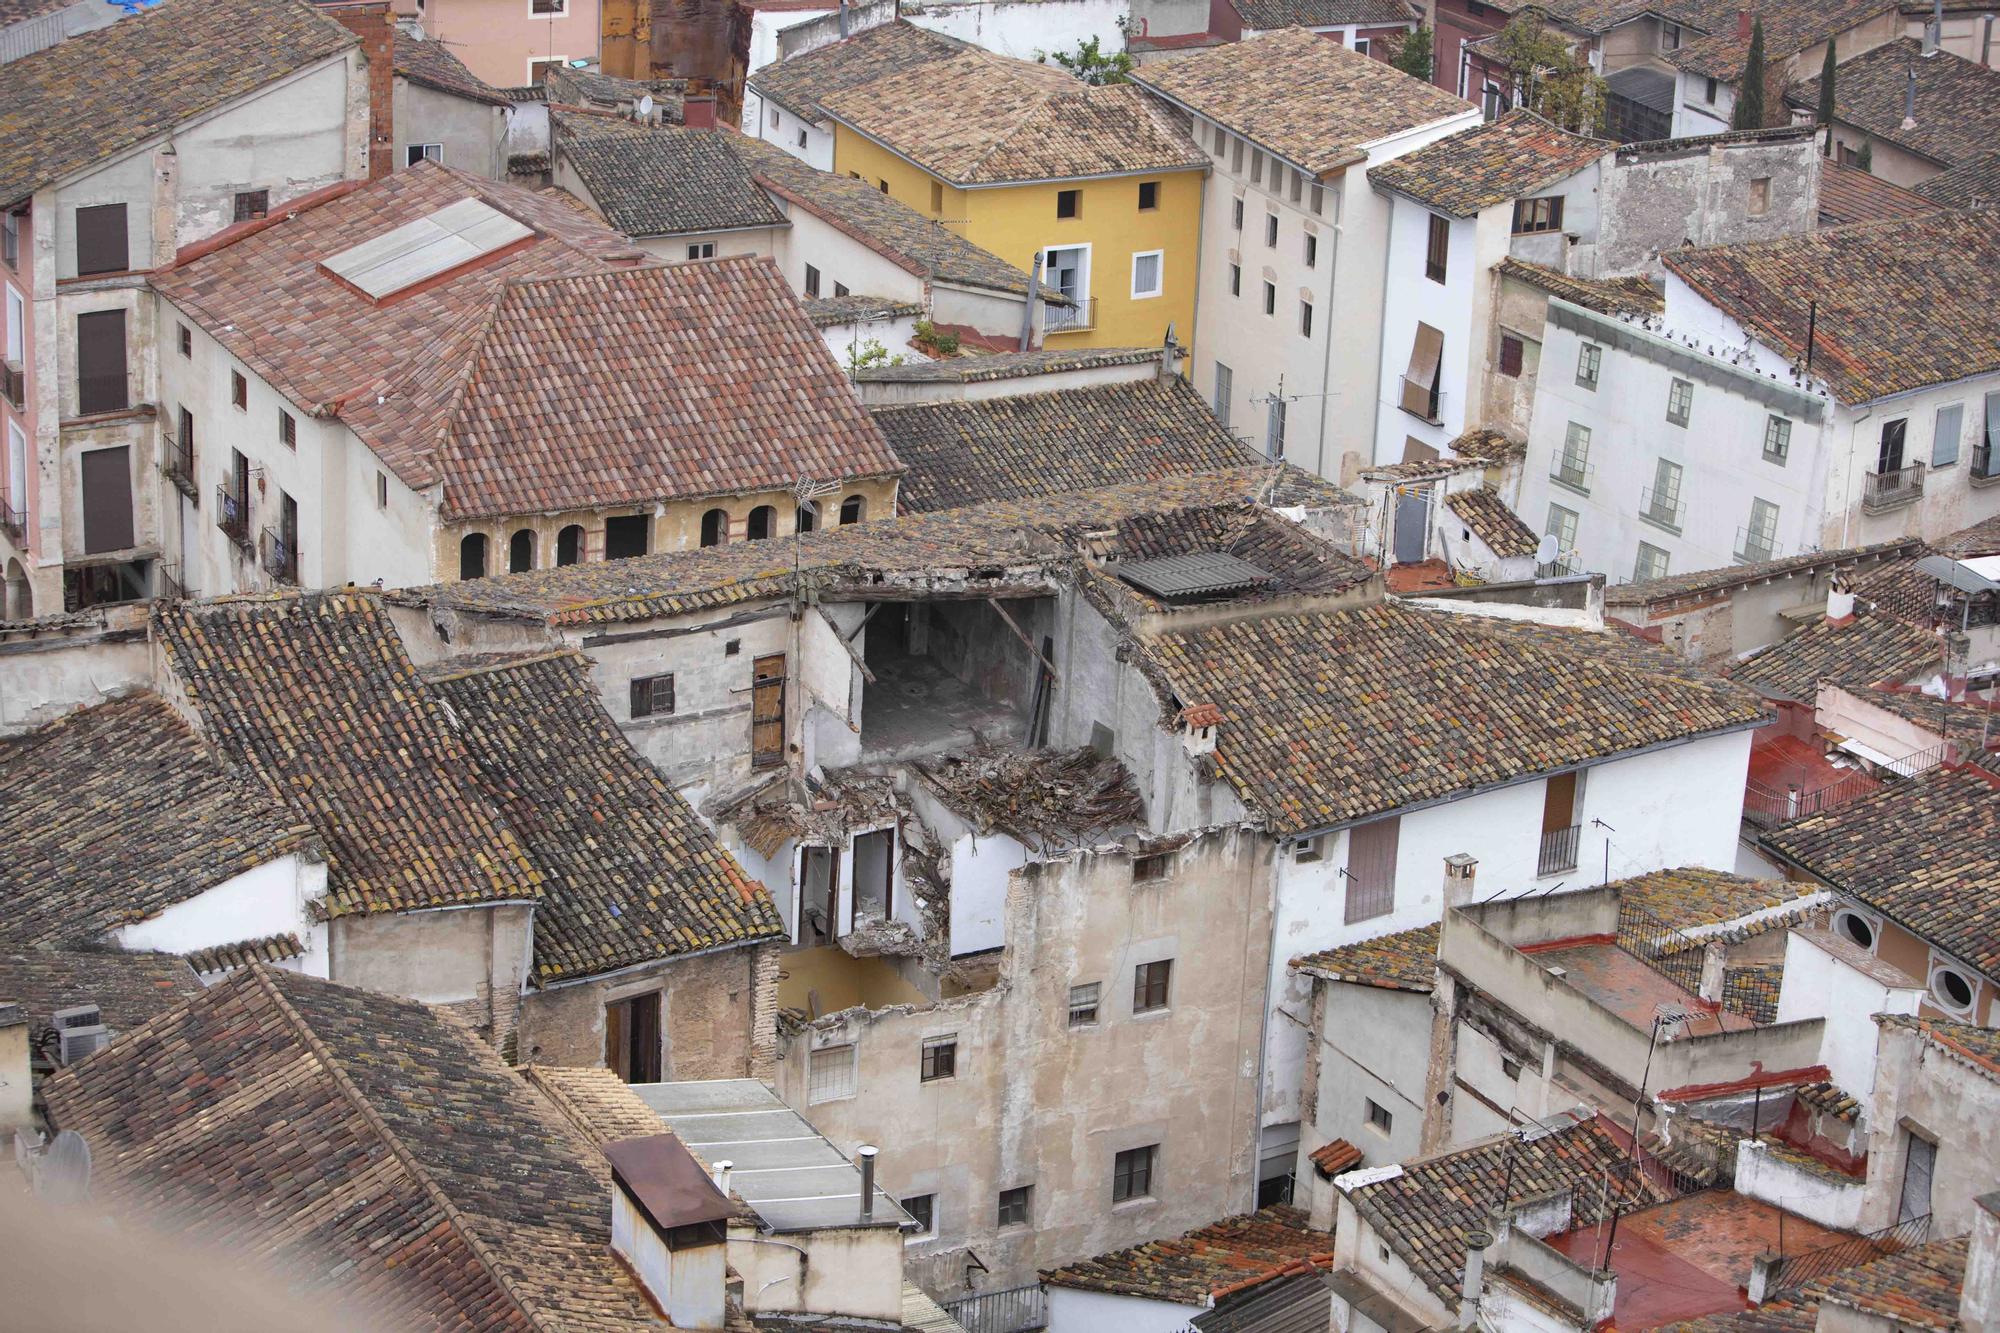 La casa del "Margallonero", un inmueble emblemático de Xàtiva en riesgo de derrumbe